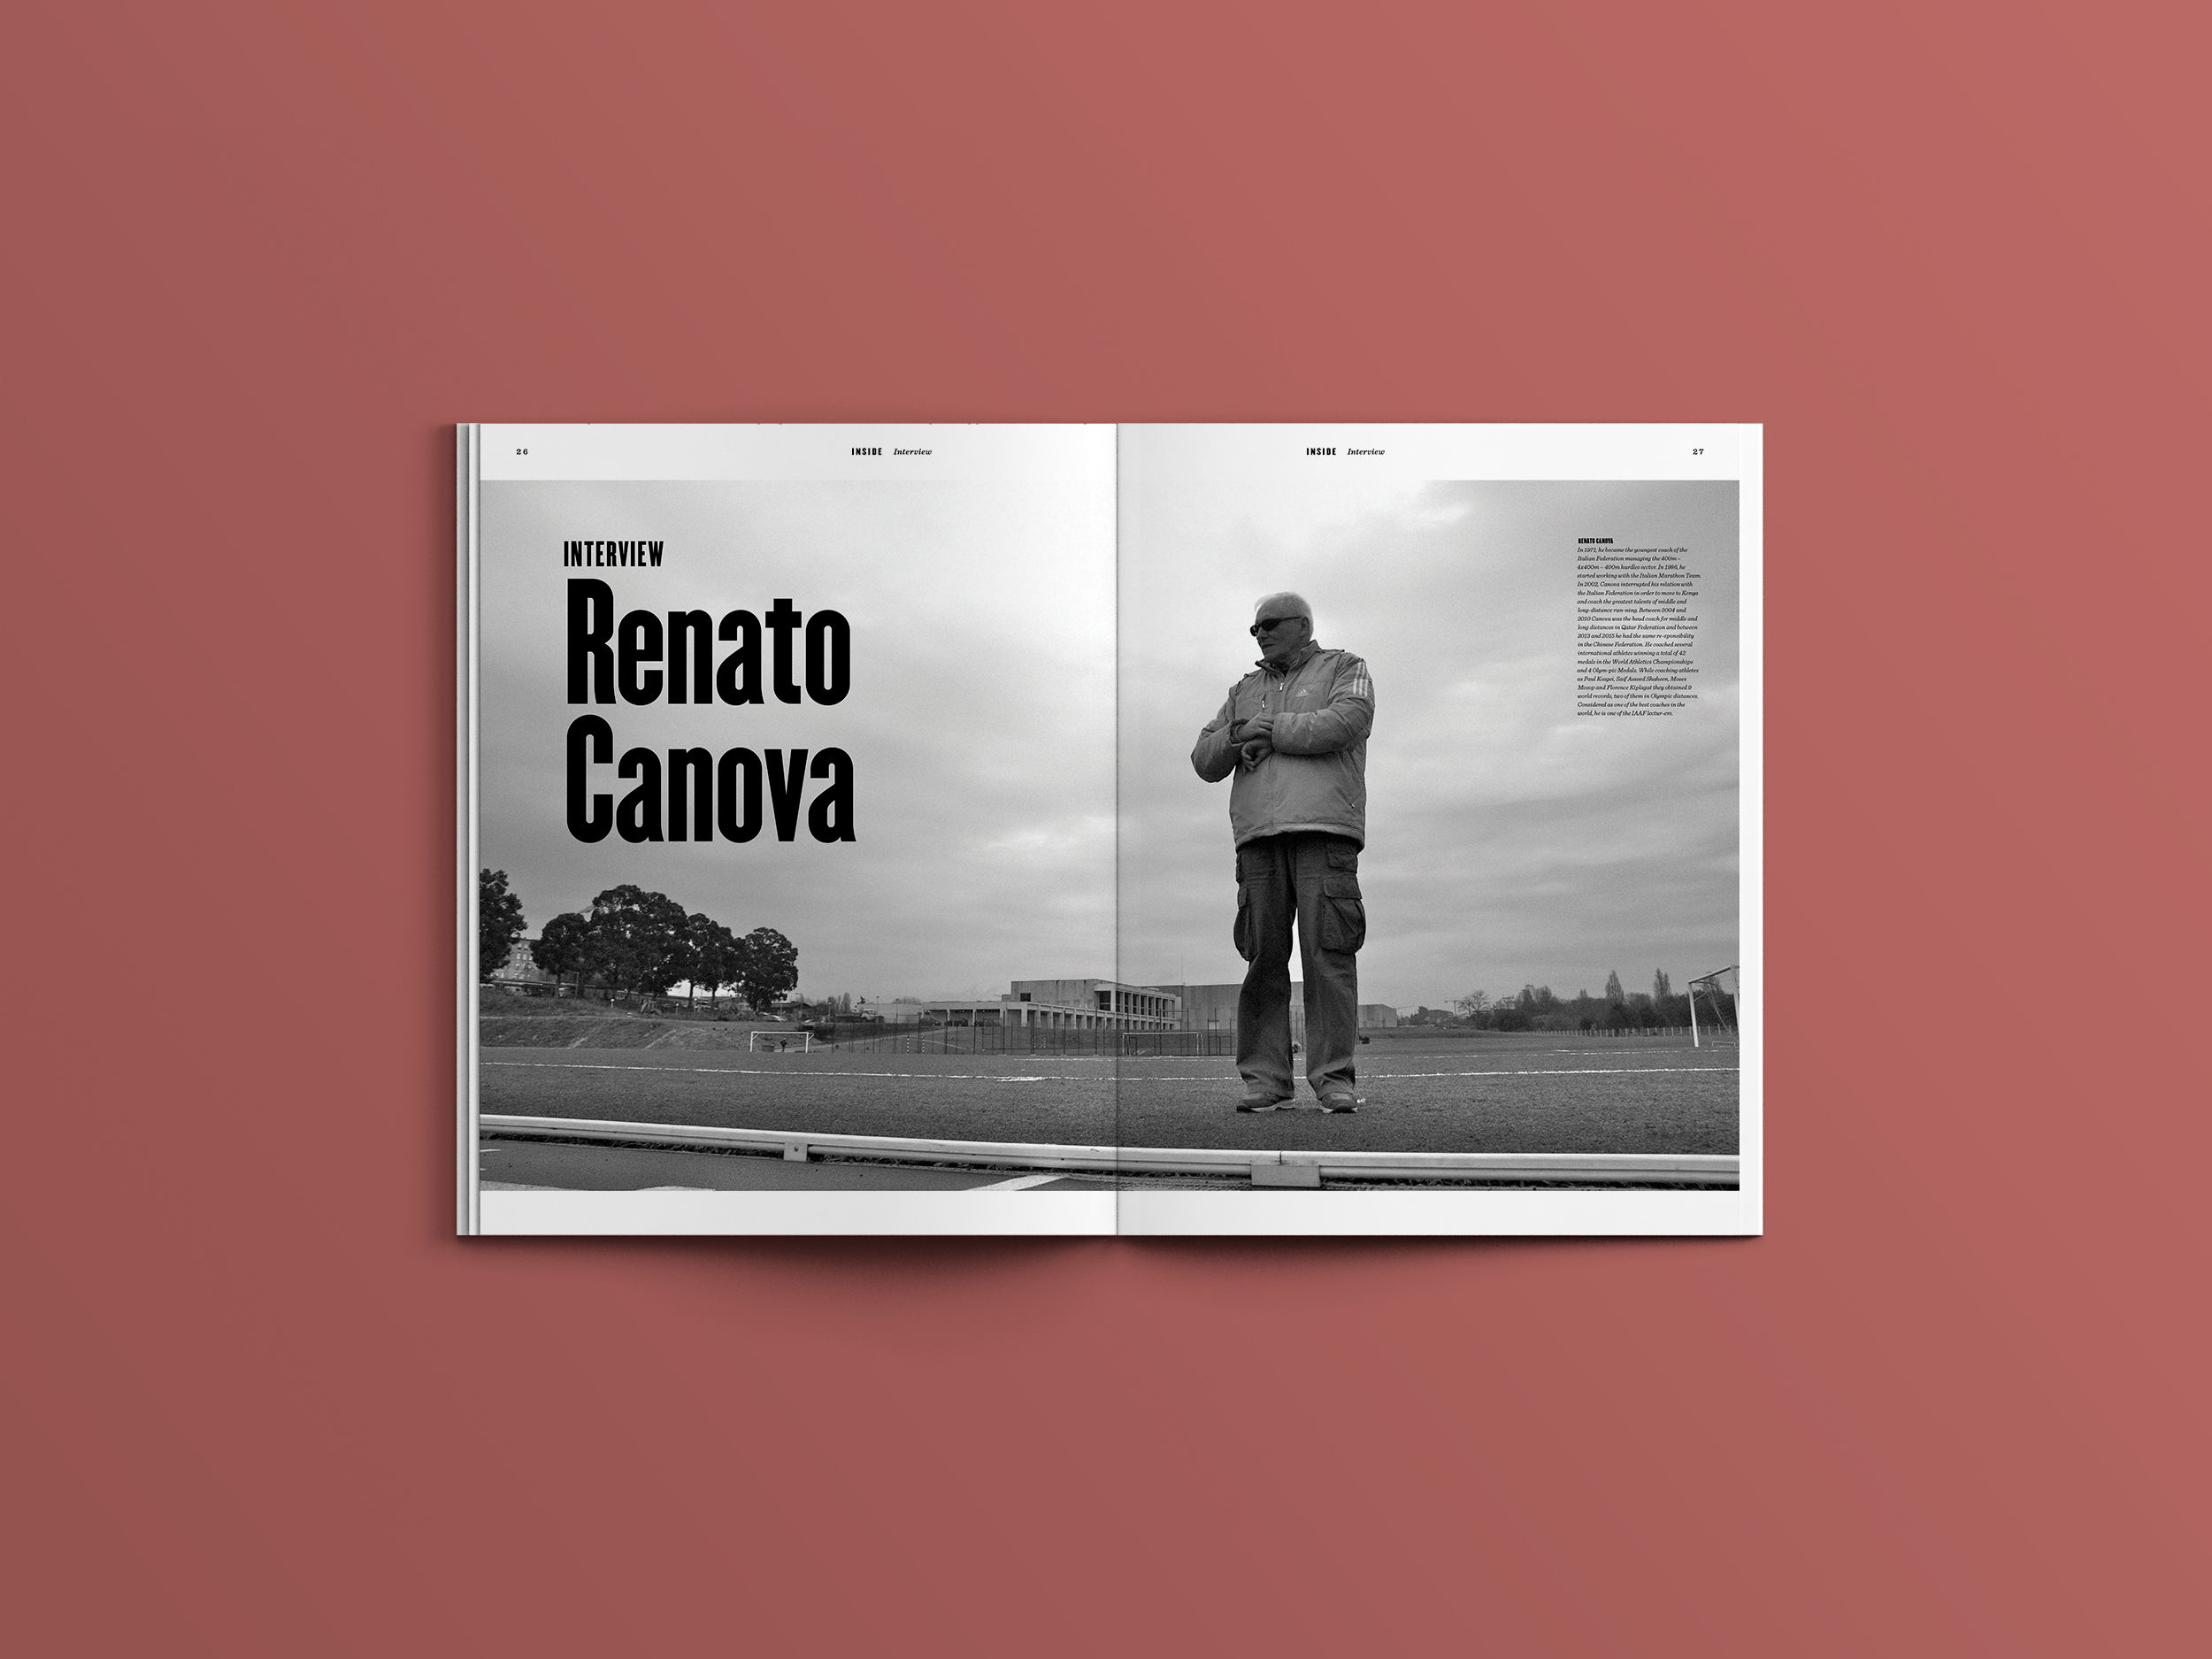  Renato Canova é um treinador italiano que soma 42 medalhas em Campeonatos do Mundo e 4 medalhas olímpicas. Tem ainda 9 recordes do mundo obtidos por atletas treinados por si e deixou uma entrevista notável na edição nº3. 